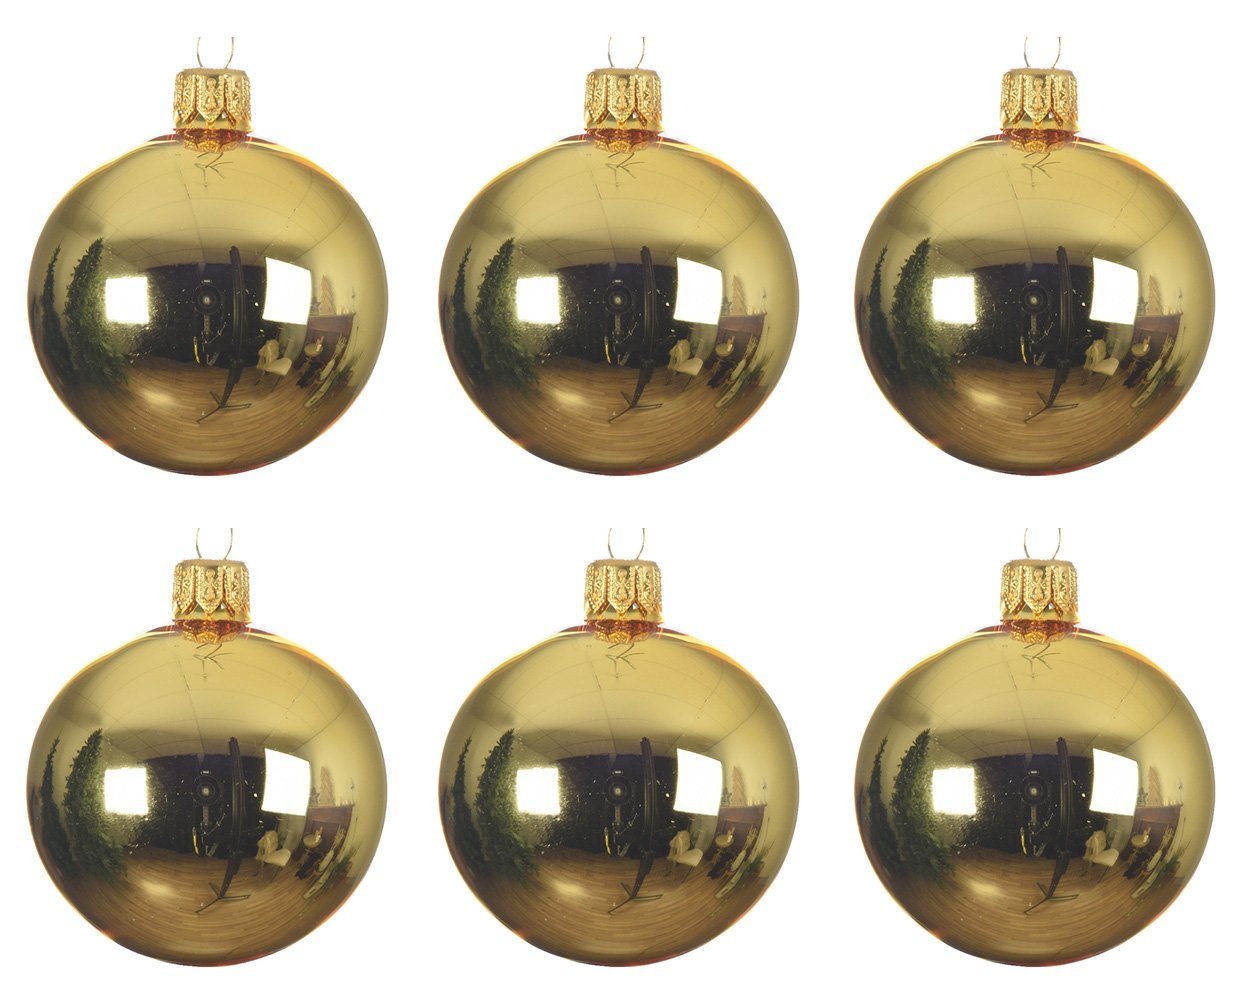 Decoris season decorations Weihnachtsbaumkugel, Weihnachtskugeln Glas 6cm mundgeblasen 6er Box - Hellgold glänzend